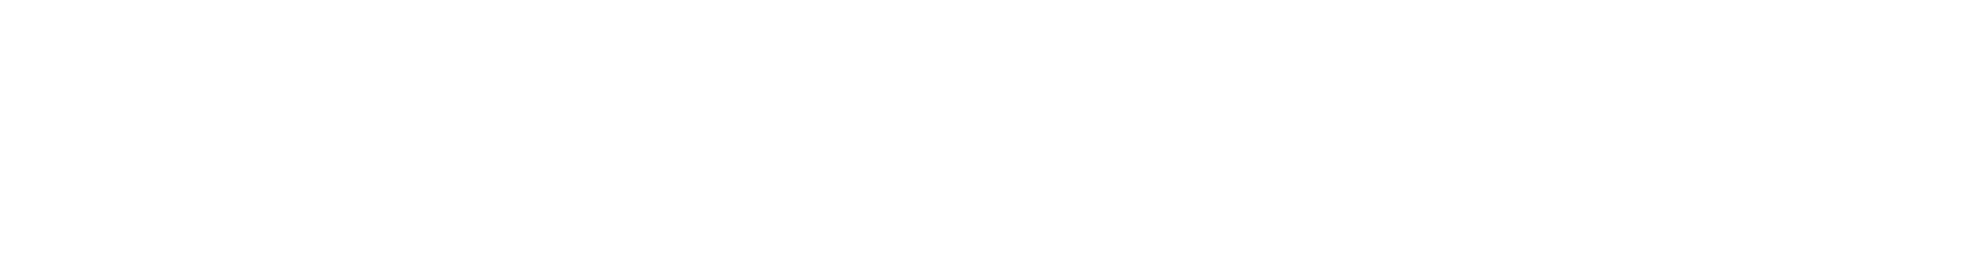 Interactive Atlas Bangladesh Delta Plan 2100